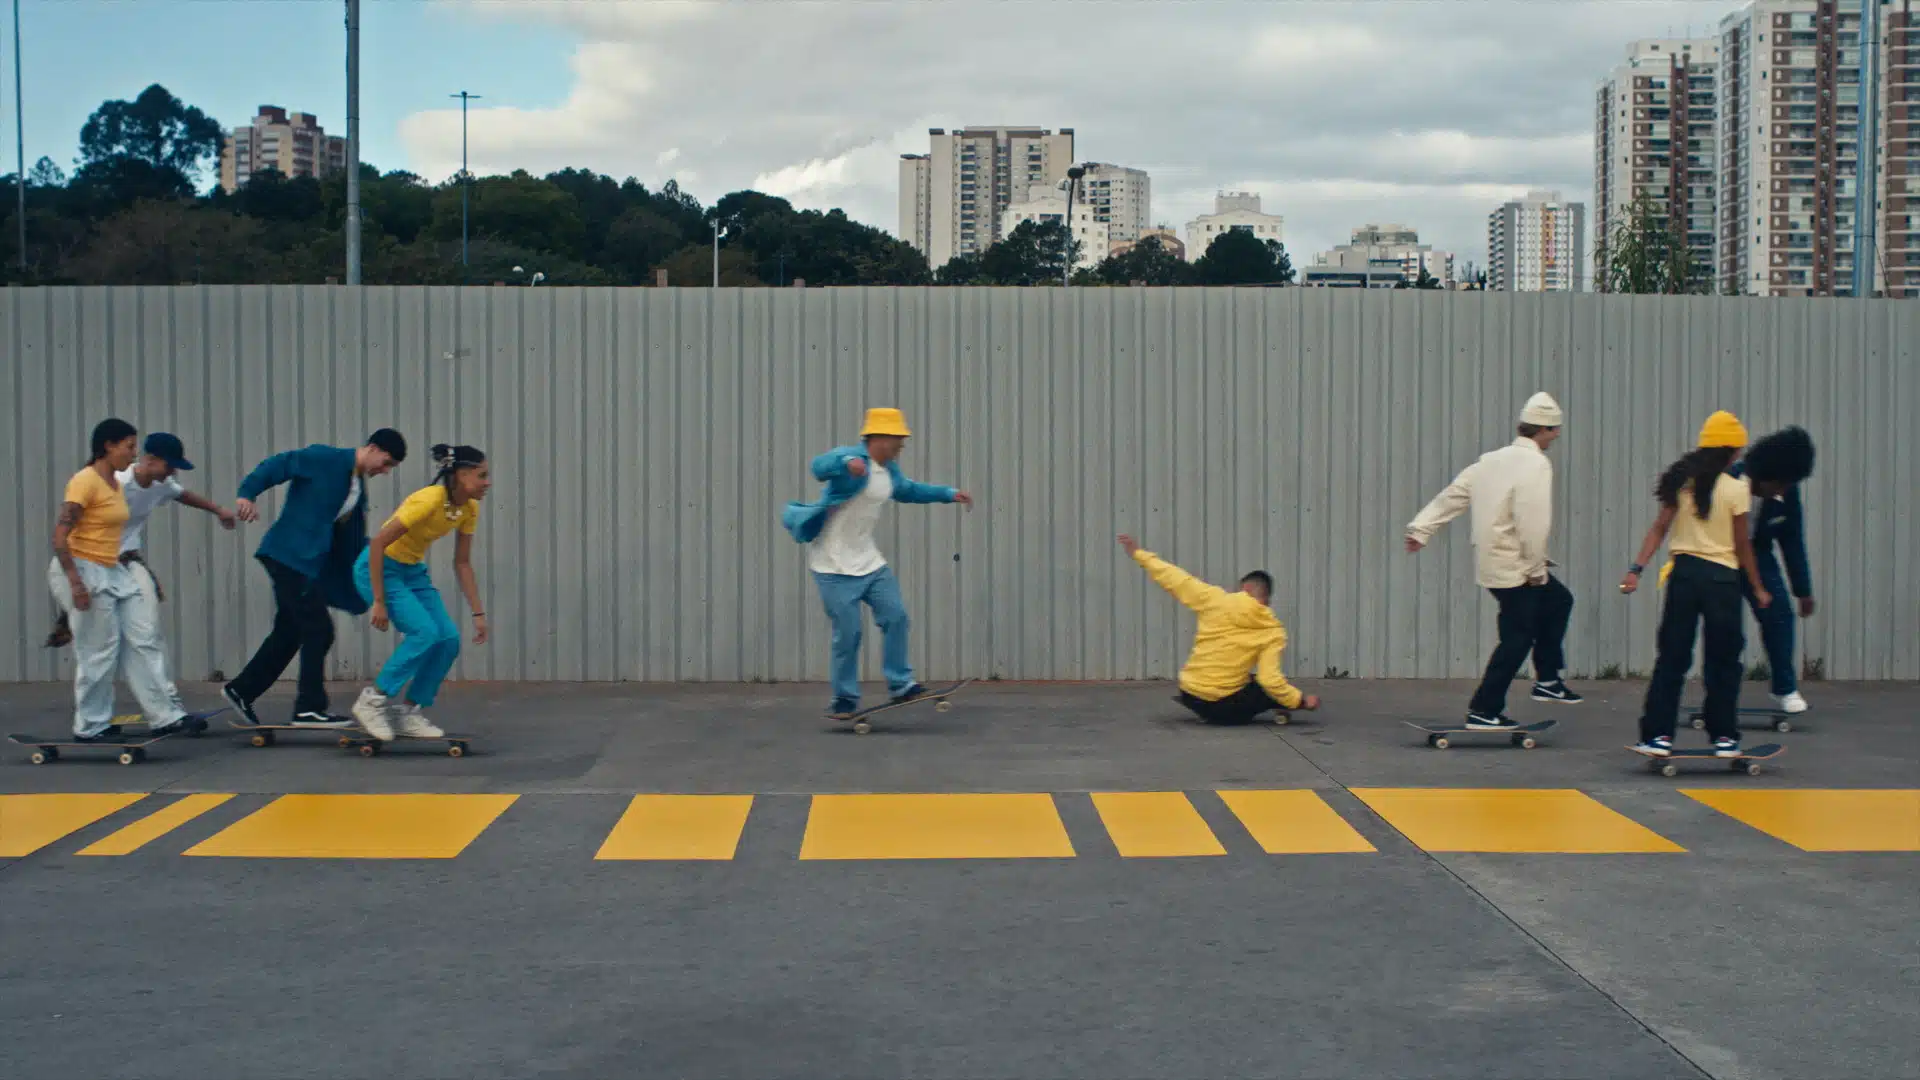 Com o rapper L7, Banco do Brasil reforça apoio ao skate em campanha que exalta o esporte nacional